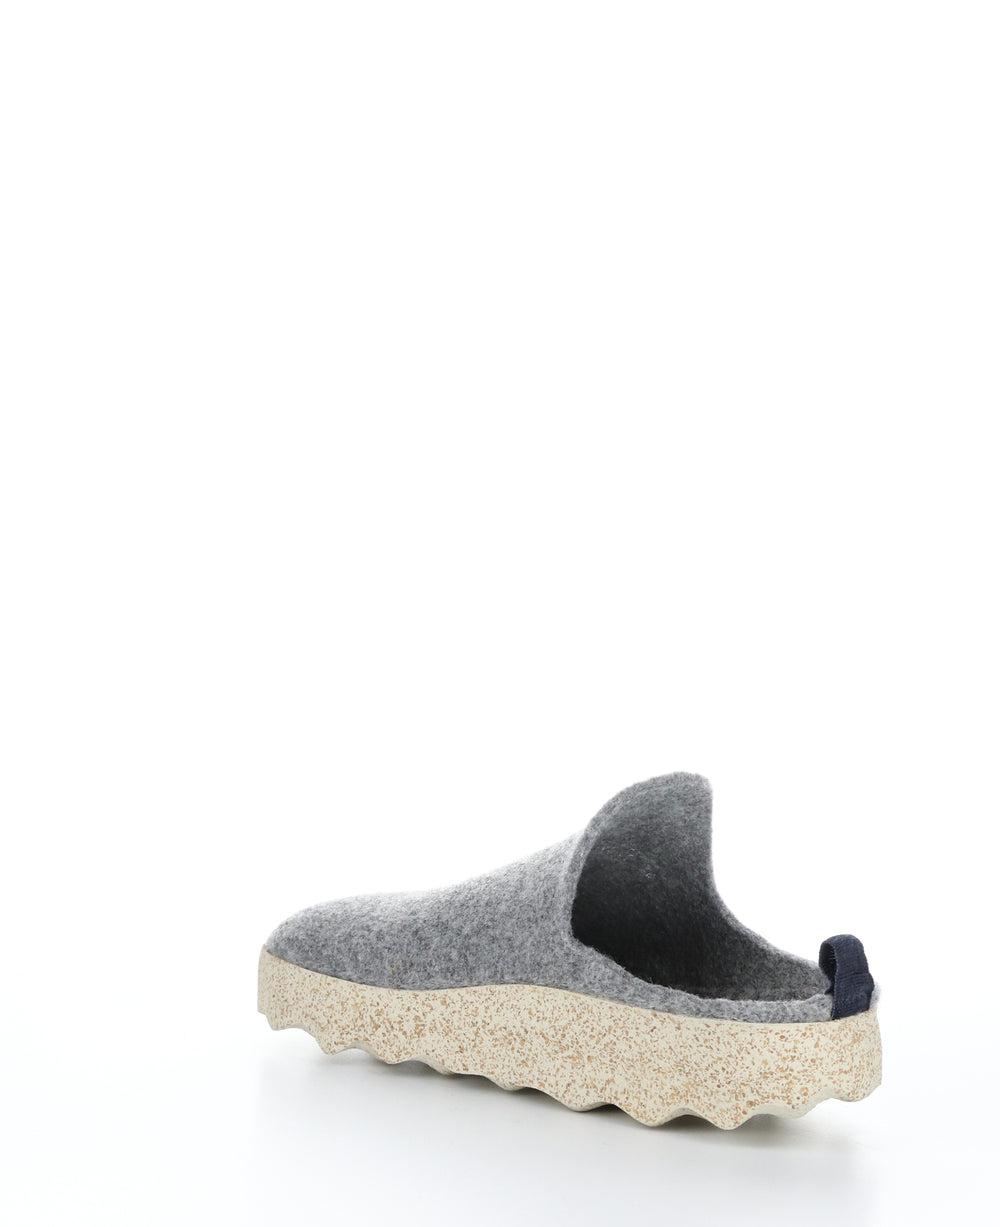 COME023ASP Concrete Round Toe Shoes|COME023ASP Chaussures à Bout Rond in Gris